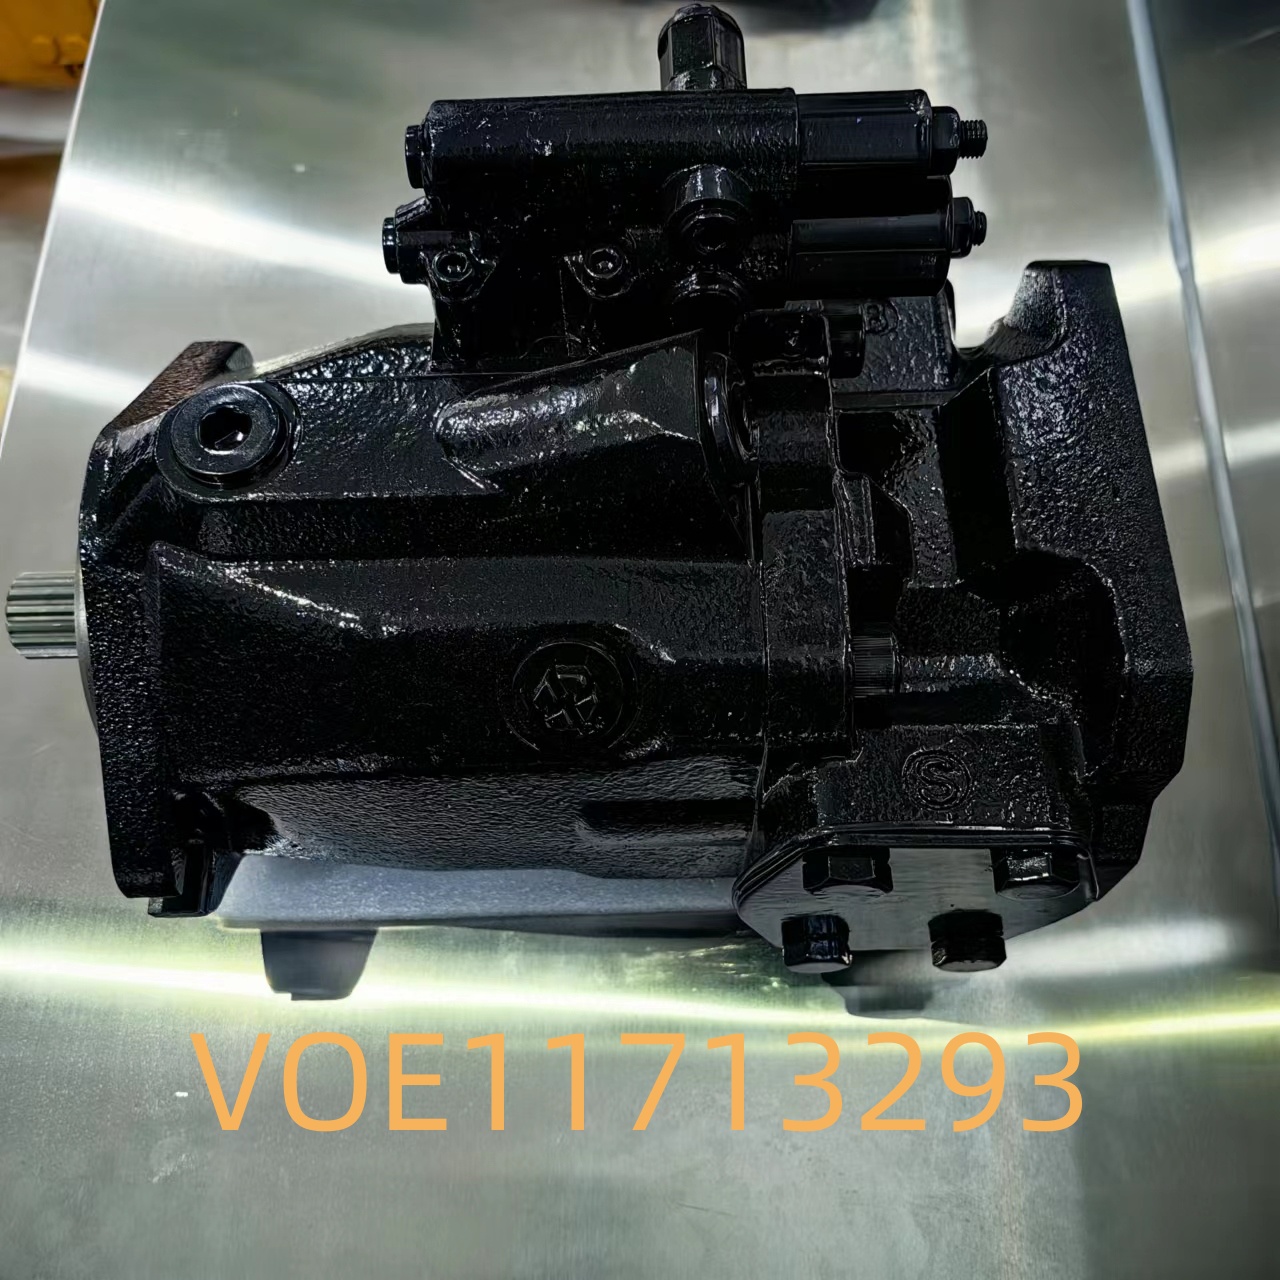 VOE11713293，11713293沃尔沃铰接式卡车液压泵